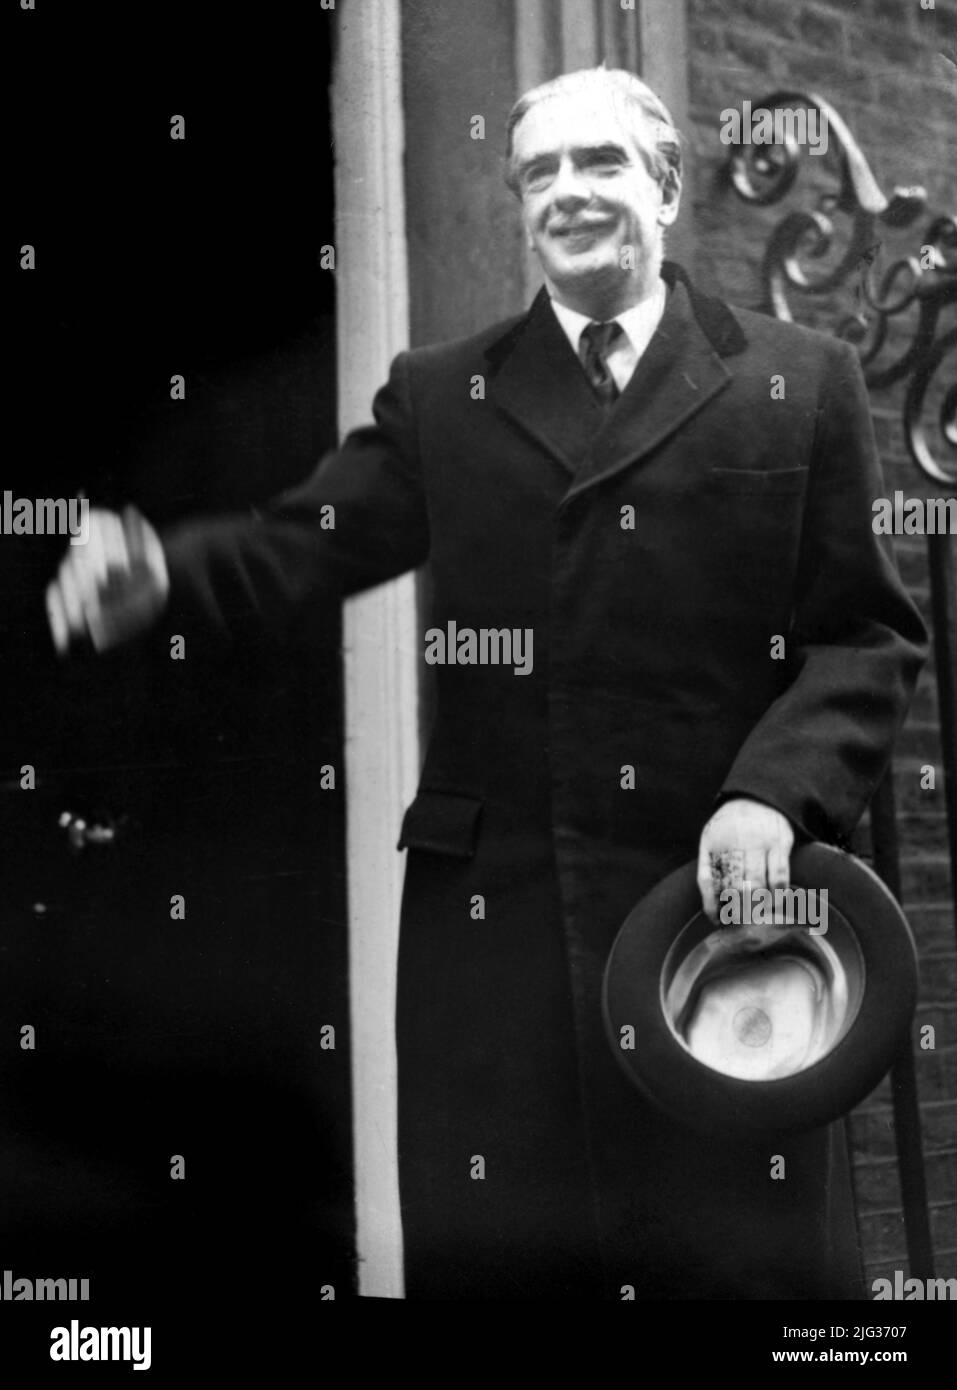 Foto de archivo de fecha 07/04/55 de Sir Anthony Eden, haciendo su primera visita a 10 Downing Street como Primer Ministro de Gran Bretaña. Boris Johnson ha superado a seis primeros ministros con el menor tiempo en el cargo desde 1900: Andrew Bonar Law (211 días en 1922-23), Alec Douglas-Home (364 días en 1963-64), Anthony Eden (644 días en 1955-57), Henry Campbell-Bannerman (852 días en 1905-08), Gordon Brown (1.049 días en 2007-10) y Neville Chamberlain (1.078 días en 1937-40). Fecha de emisión: Jueves 7 de julio de 2022. Foto de stock